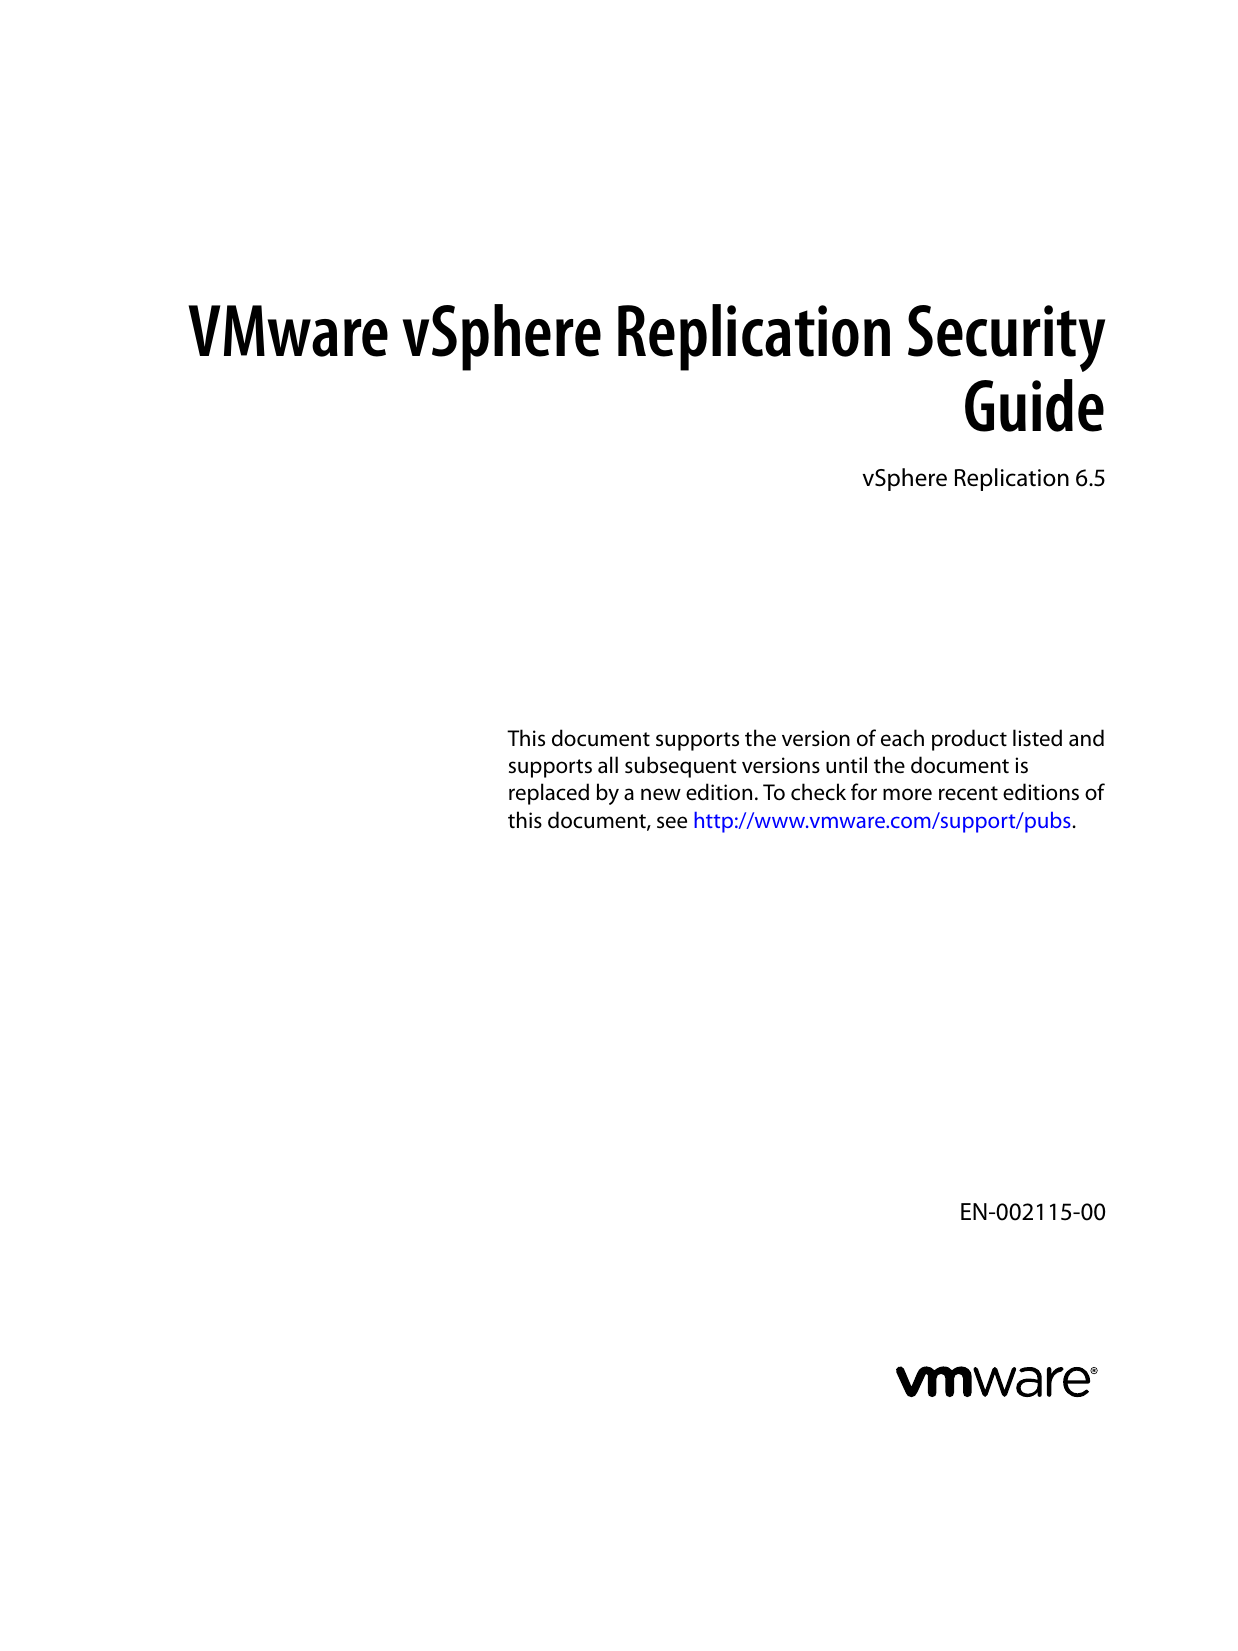 vmware vsphere 6.5 administration guide